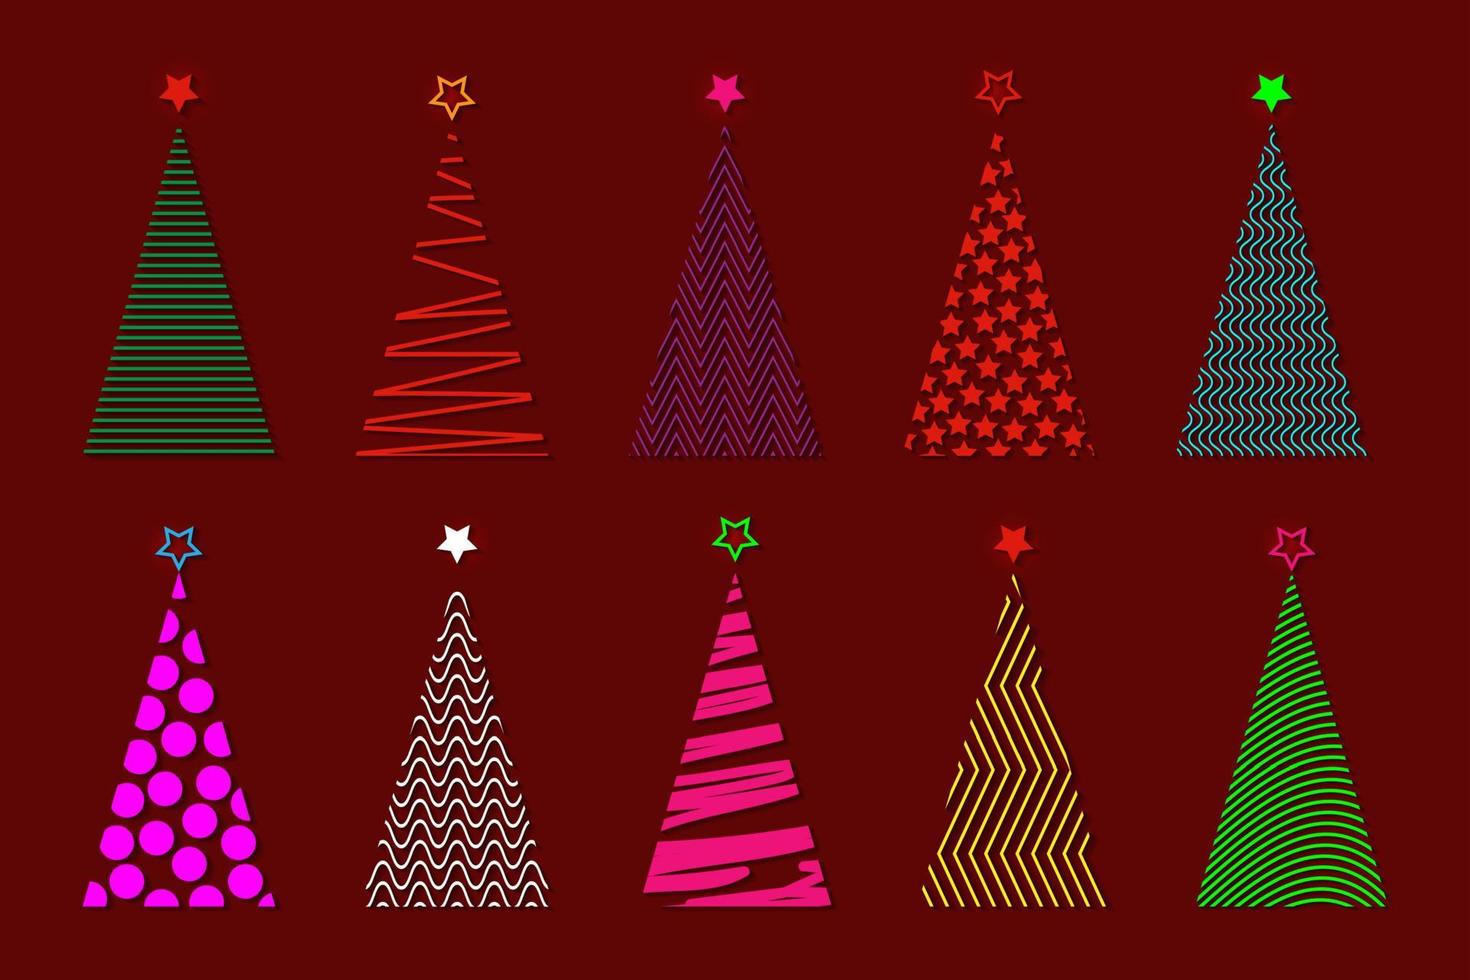 ensemble d'arbre de Noël stylisé vectoriel coloré, icône de logo de mode festive, arbre géométrique en relief dans des couleurs néon vibrantes, isolé sur fond rouge